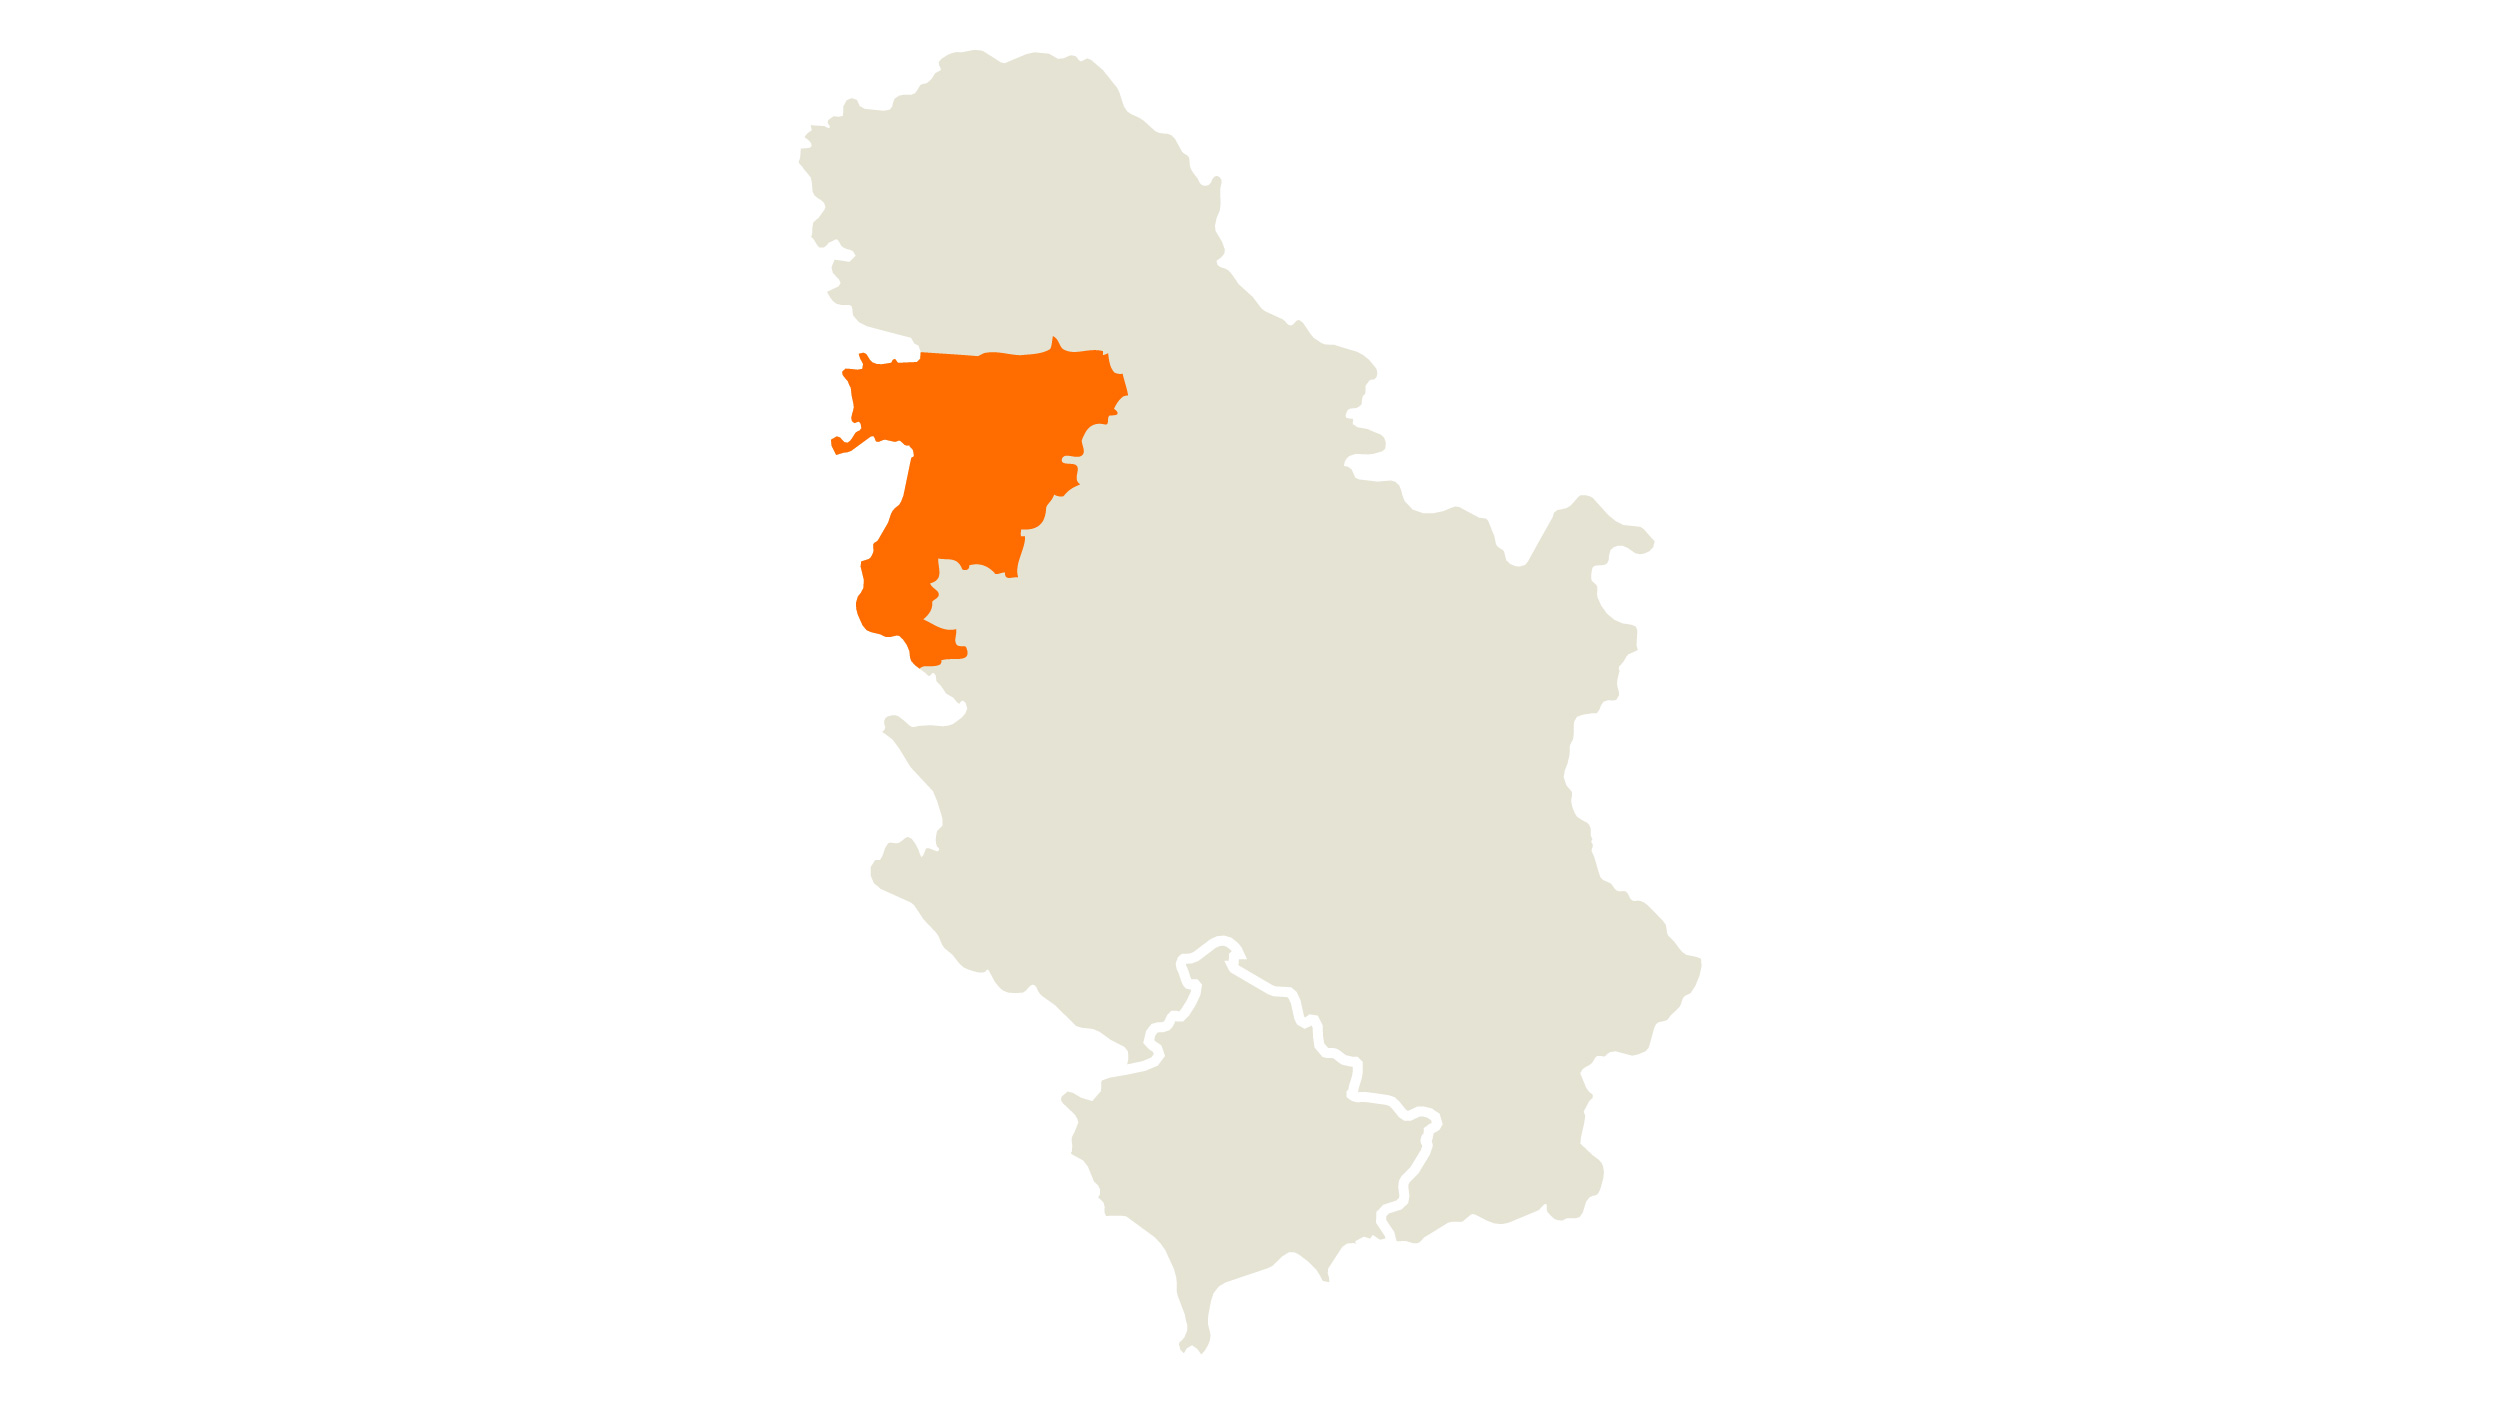 KWS-RS-Consultant-Map-Srdjan-Prodanic.jpg